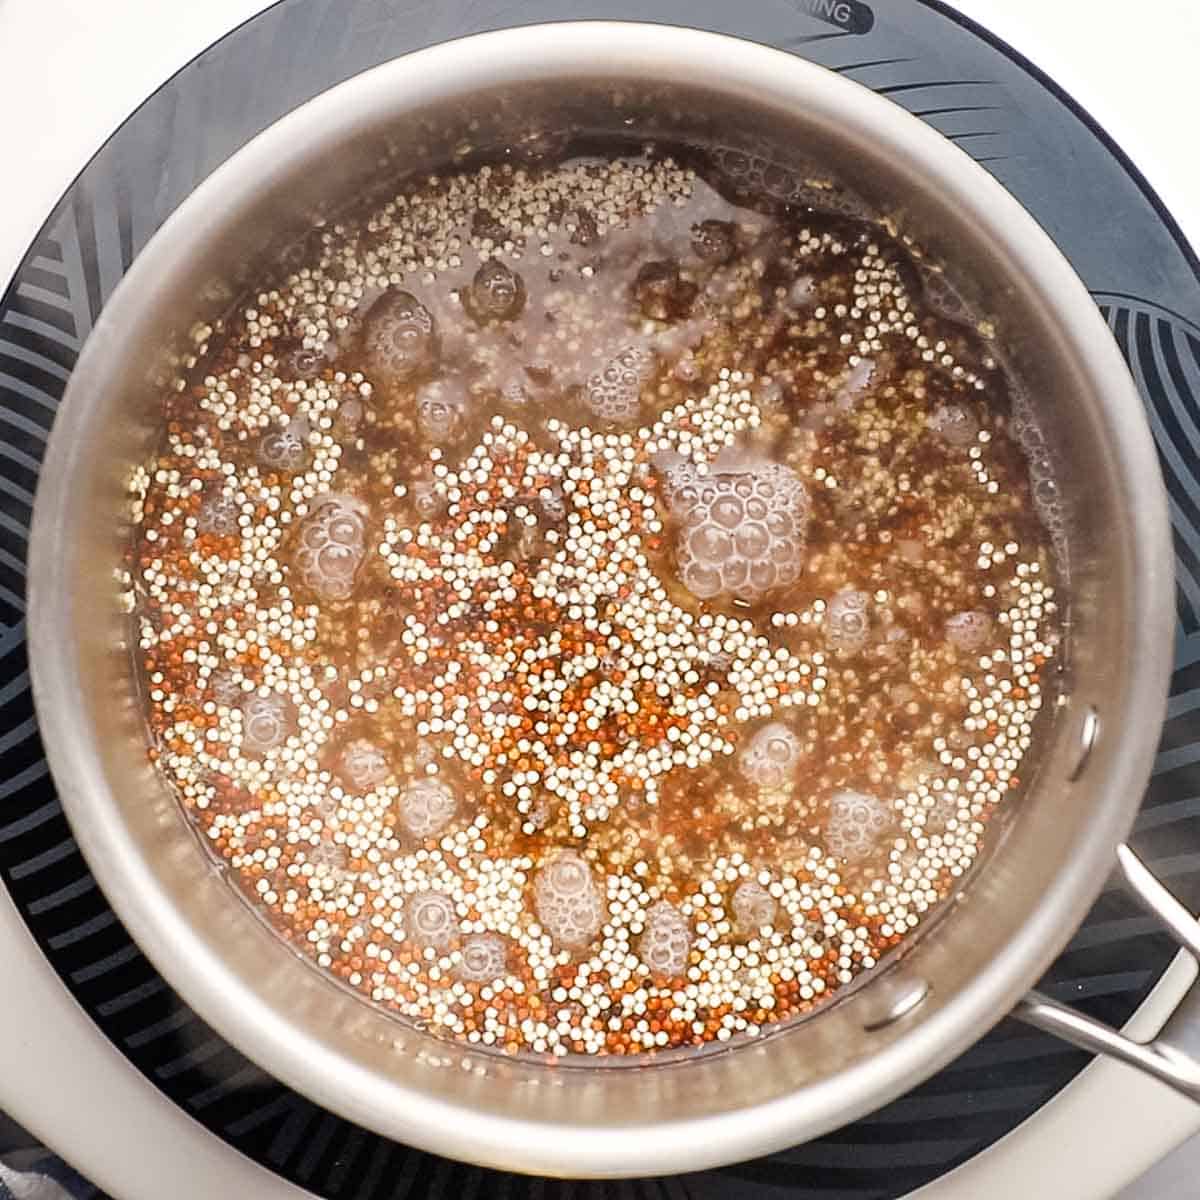 Tri color quinoa simmering in a pot.